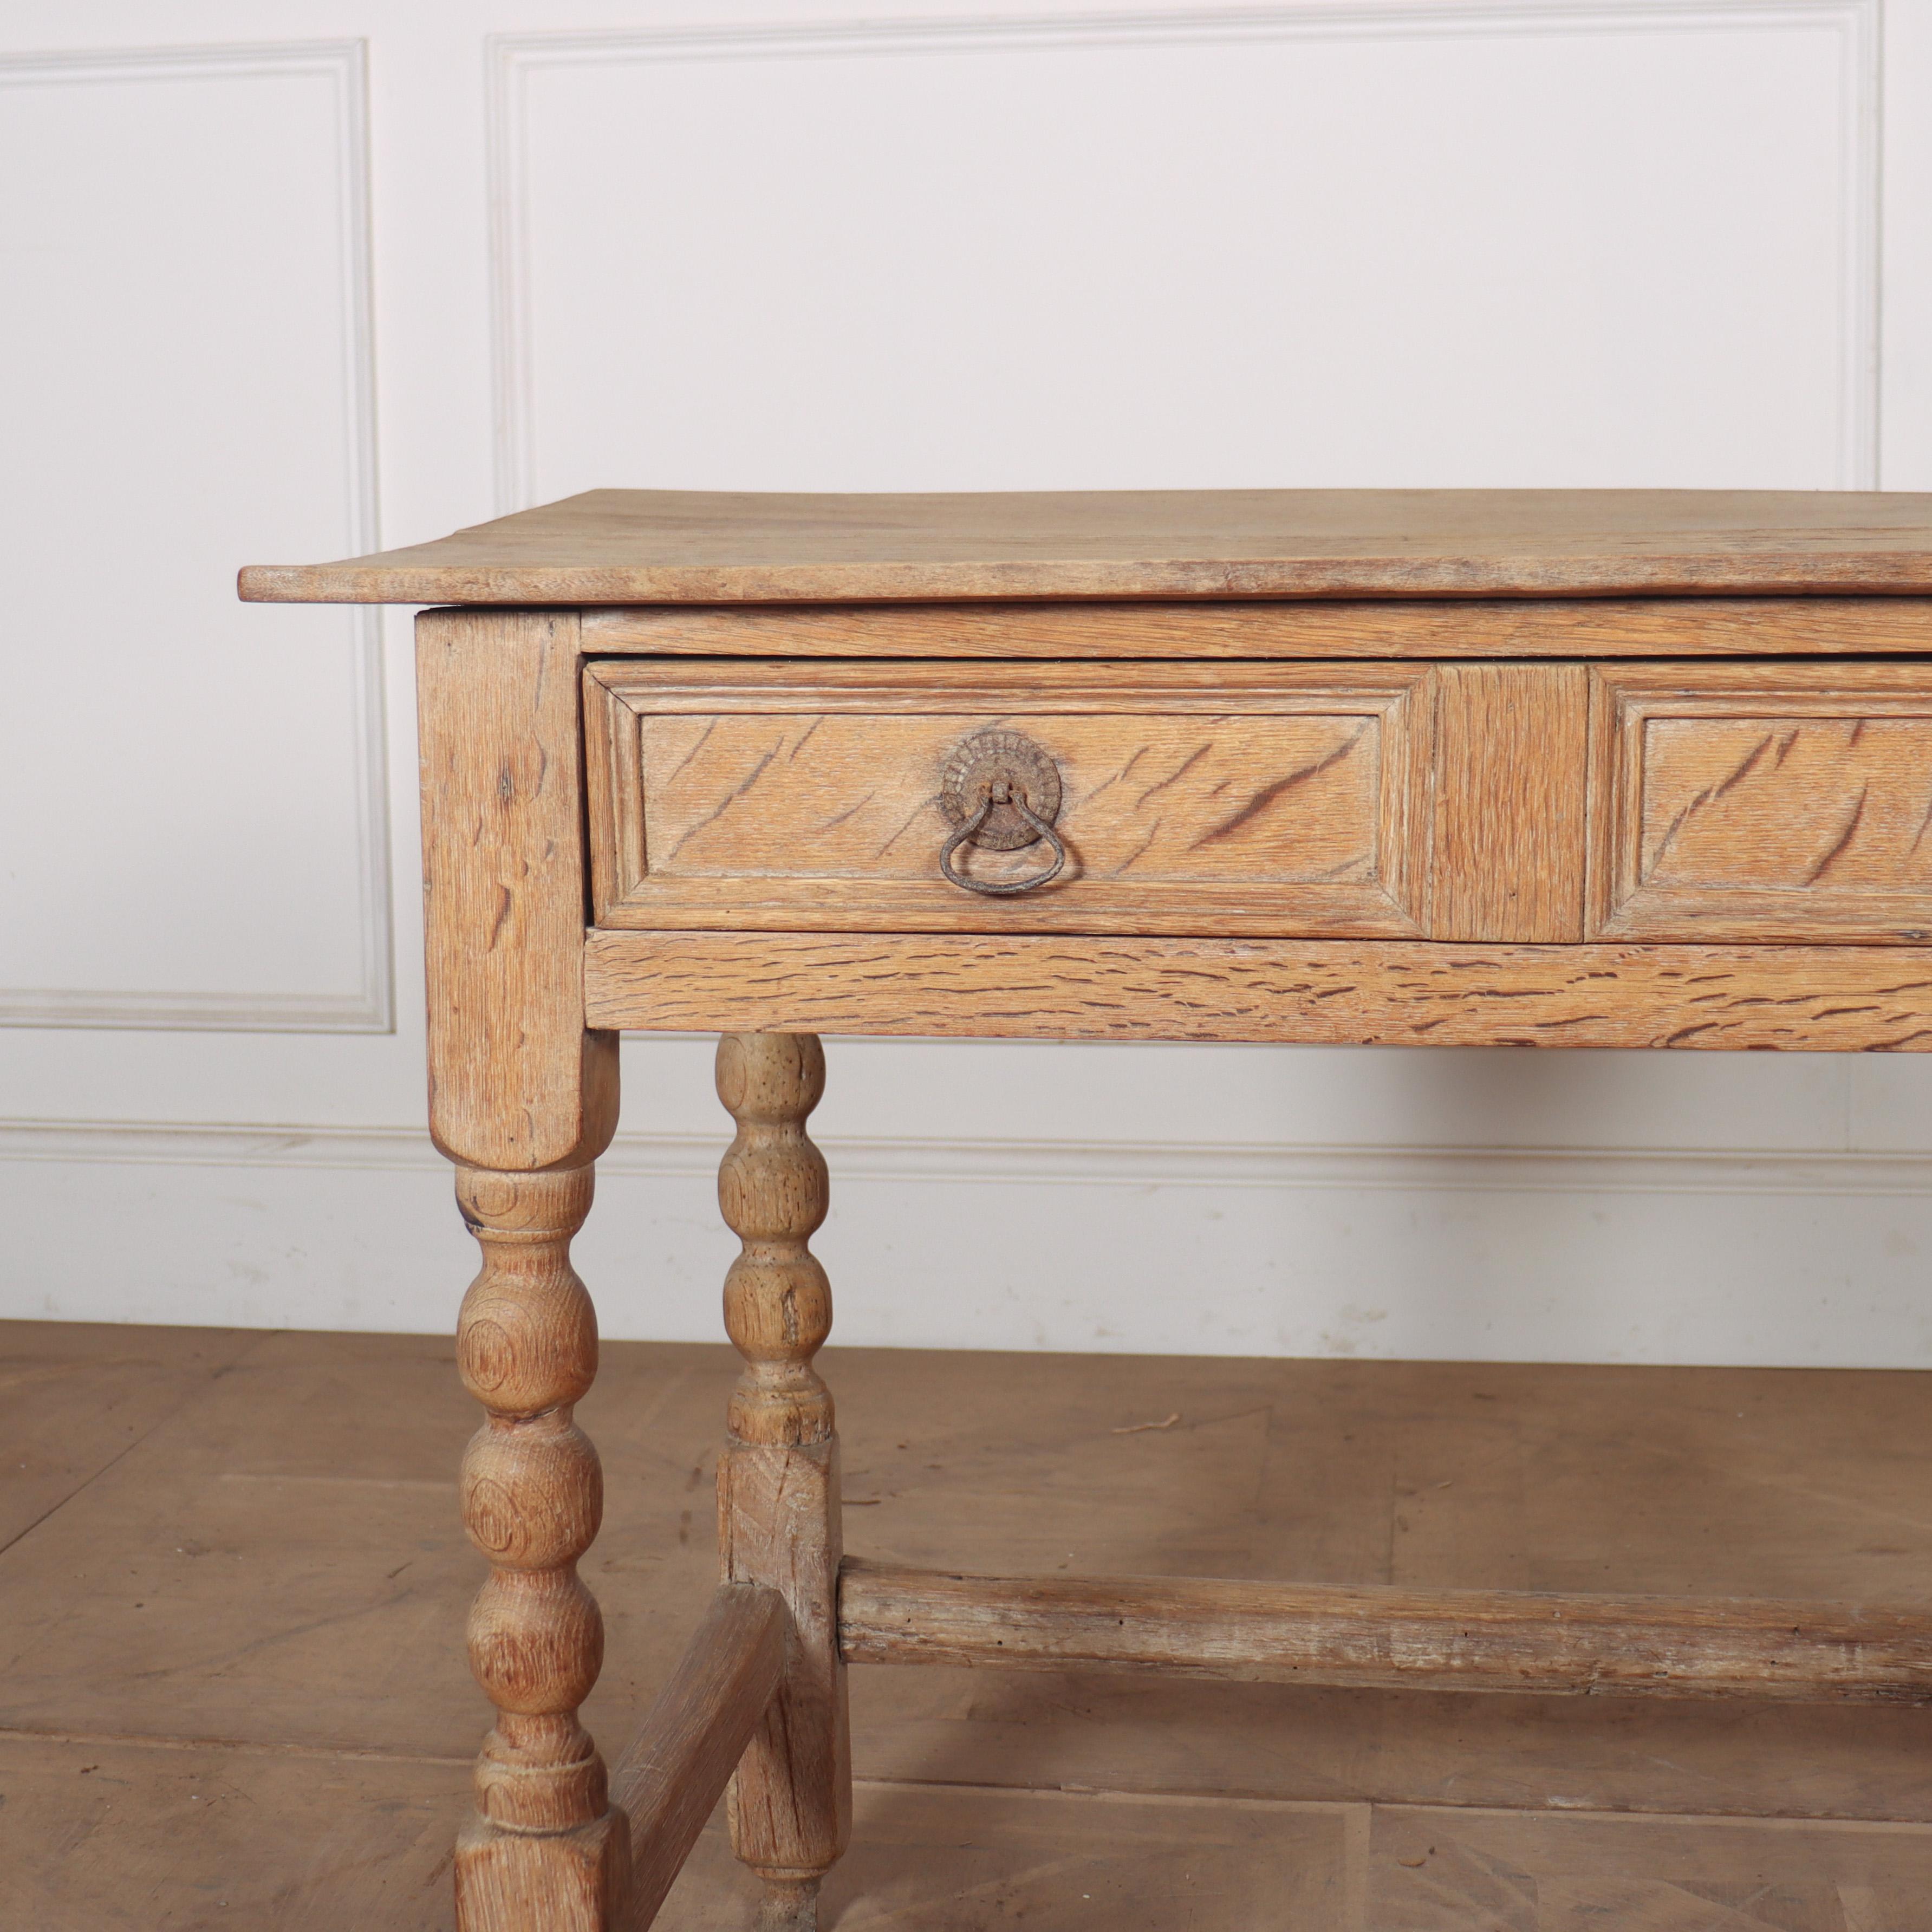 Table à lampe à un tiroir en chêne blanchi du début du XVIIIe siècle. 1730.

Référence : 8177

Dimensions
34 pouces (86 cm) de large
55 cm (21.5 inches) de profondeur
28 pouces (71 cms) de hauteur